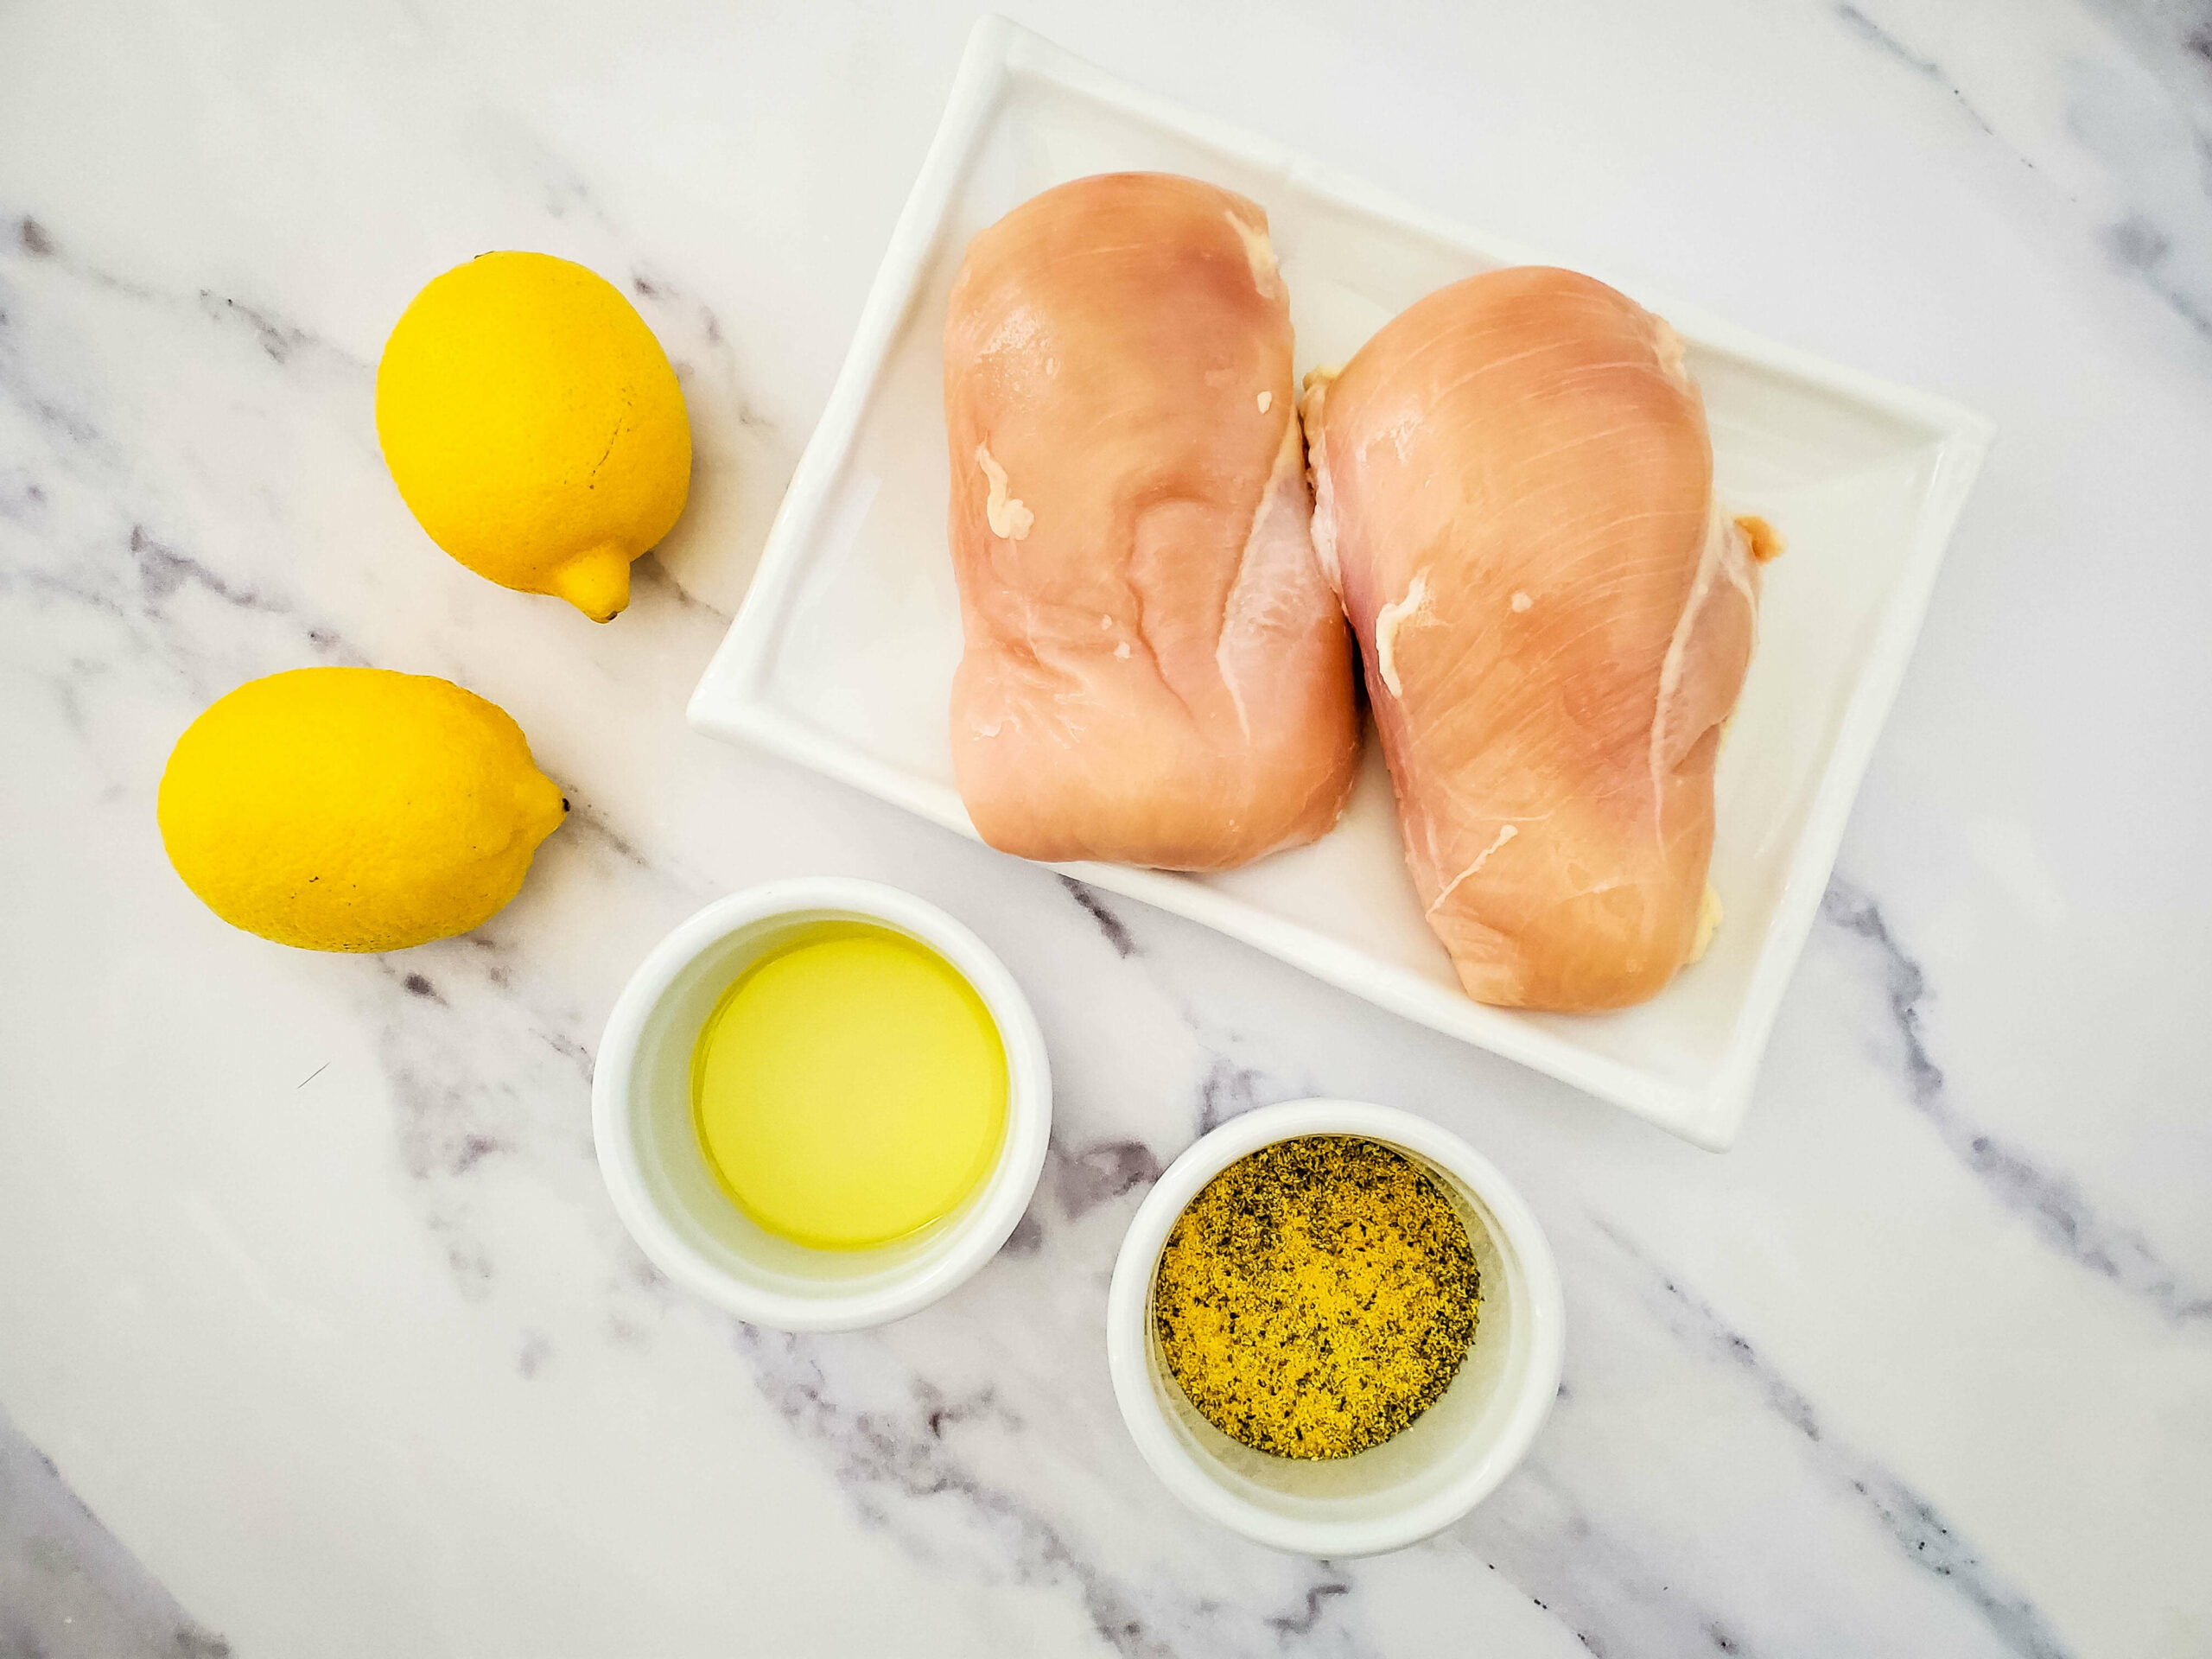 Chicken, oil, seasonings and lemon.